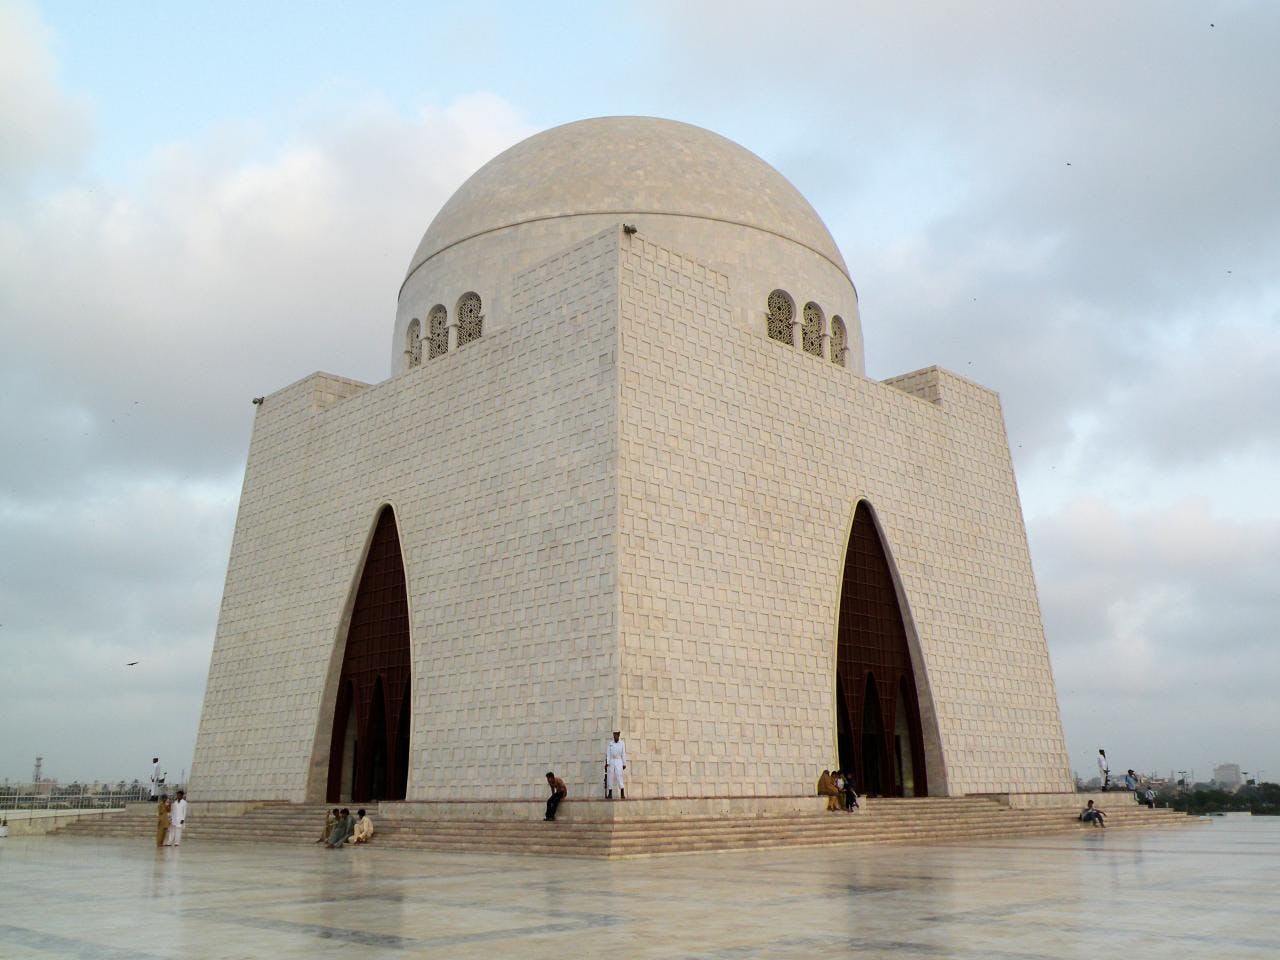 Image - Mazar E Quaid, Jinnah Mausoleum